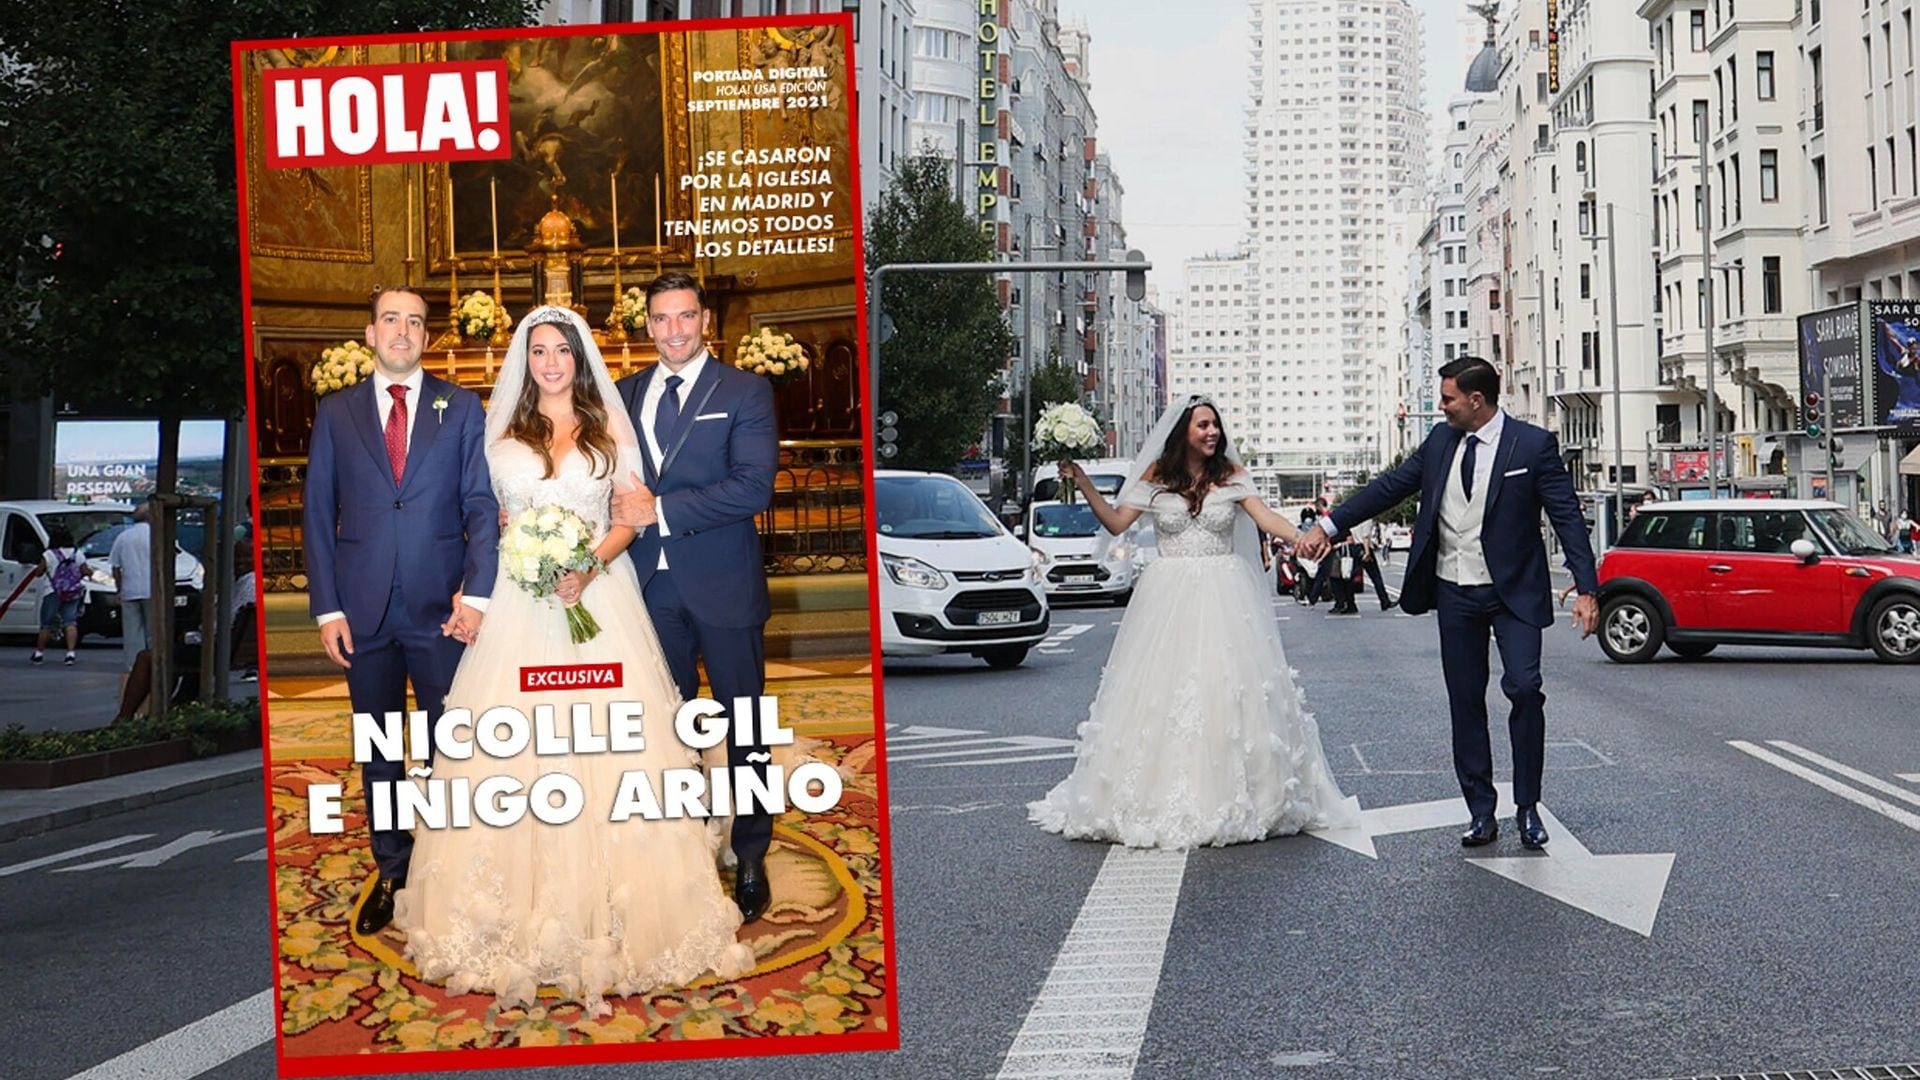 Exclusiva: La primeras fotos oficiales de la boda eclesiástica de Nicolle Gil e Iñigo Ariño en Madrid